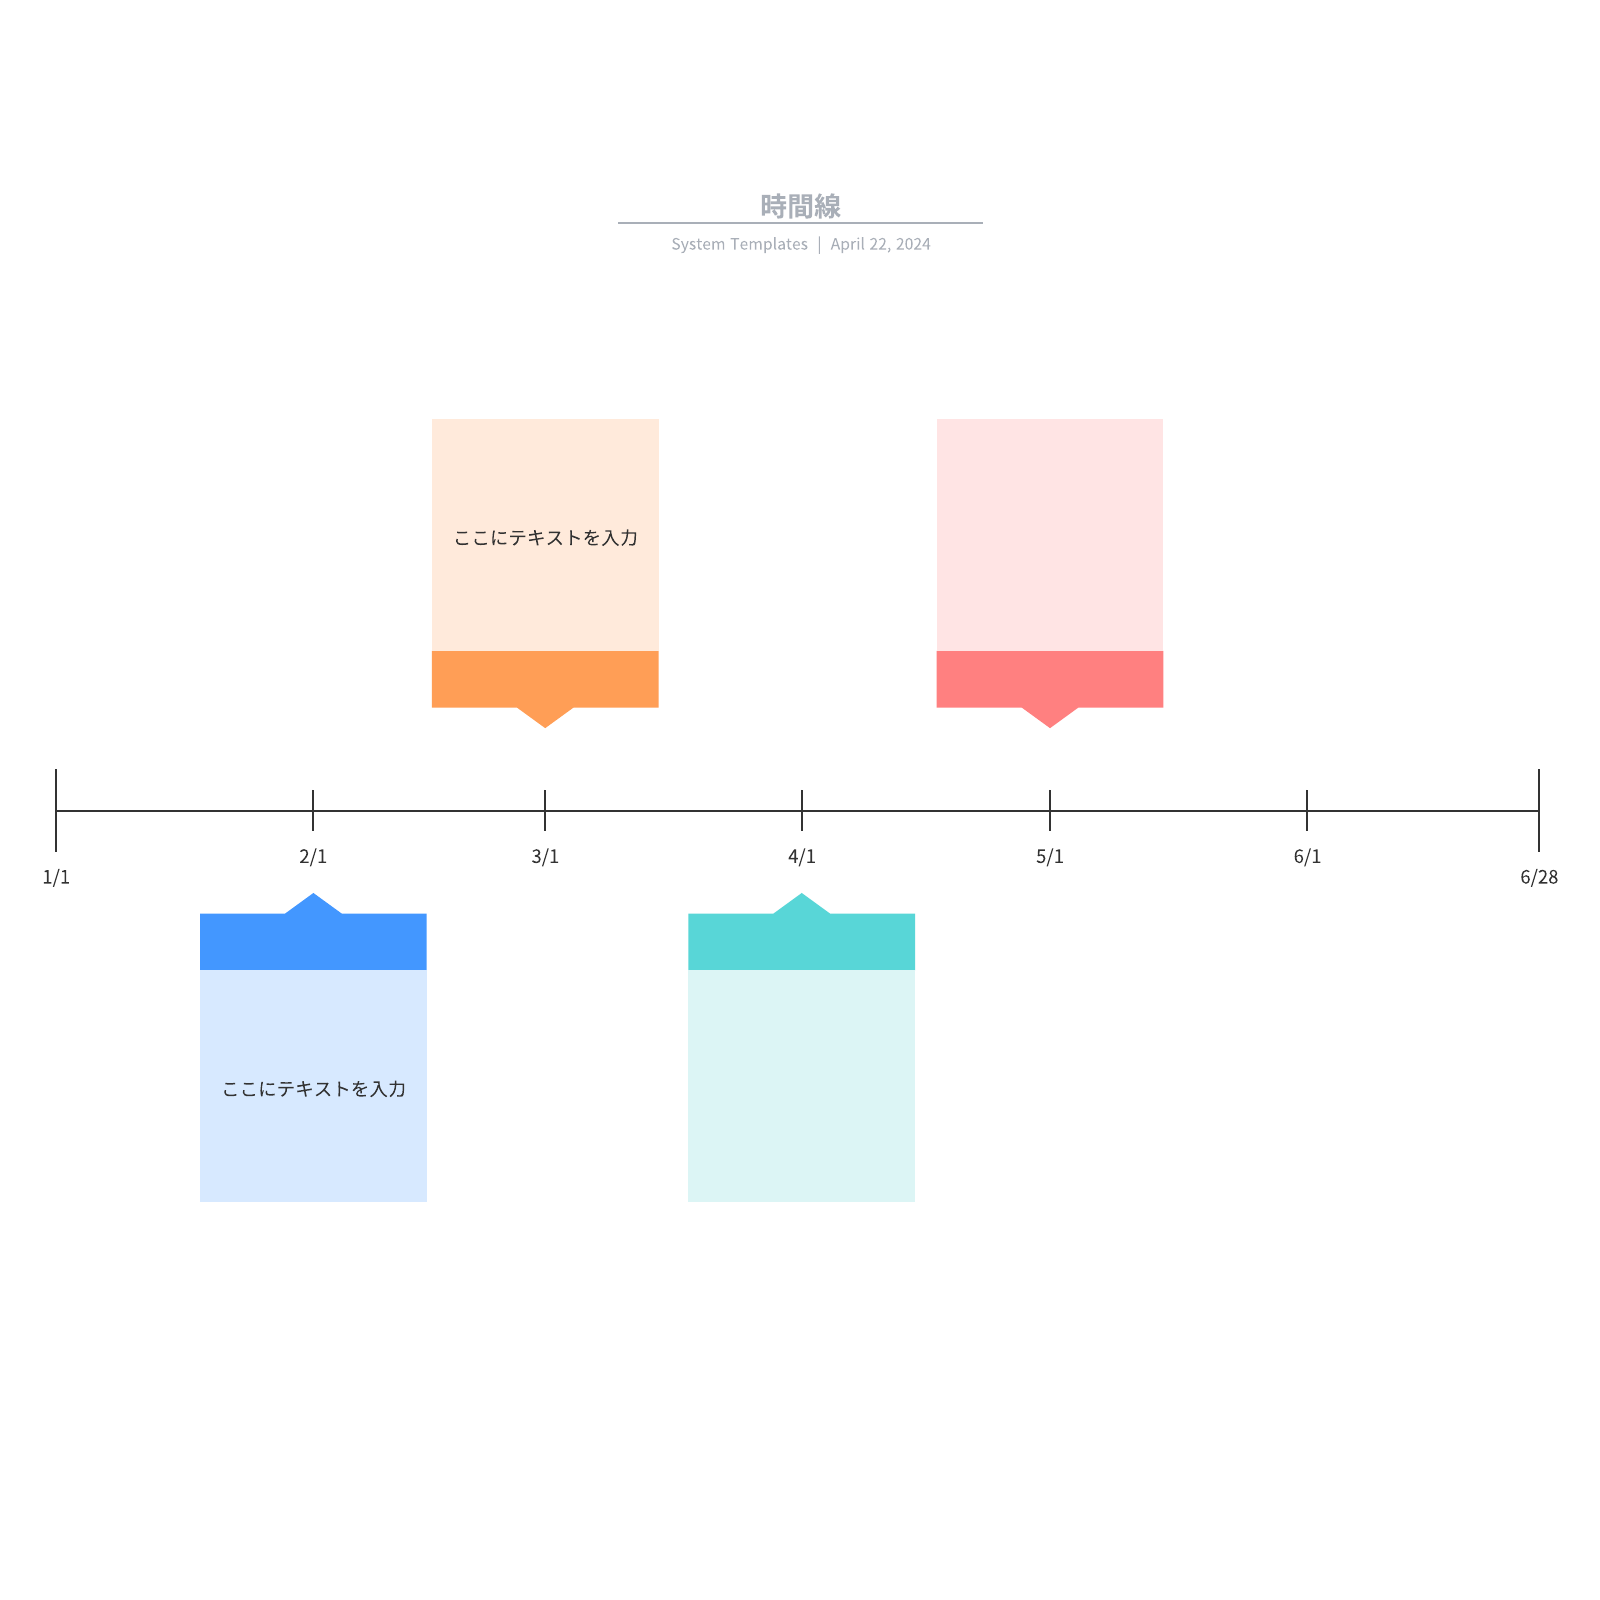 デザイン時に使える年表、スケジュール表のテンプレート